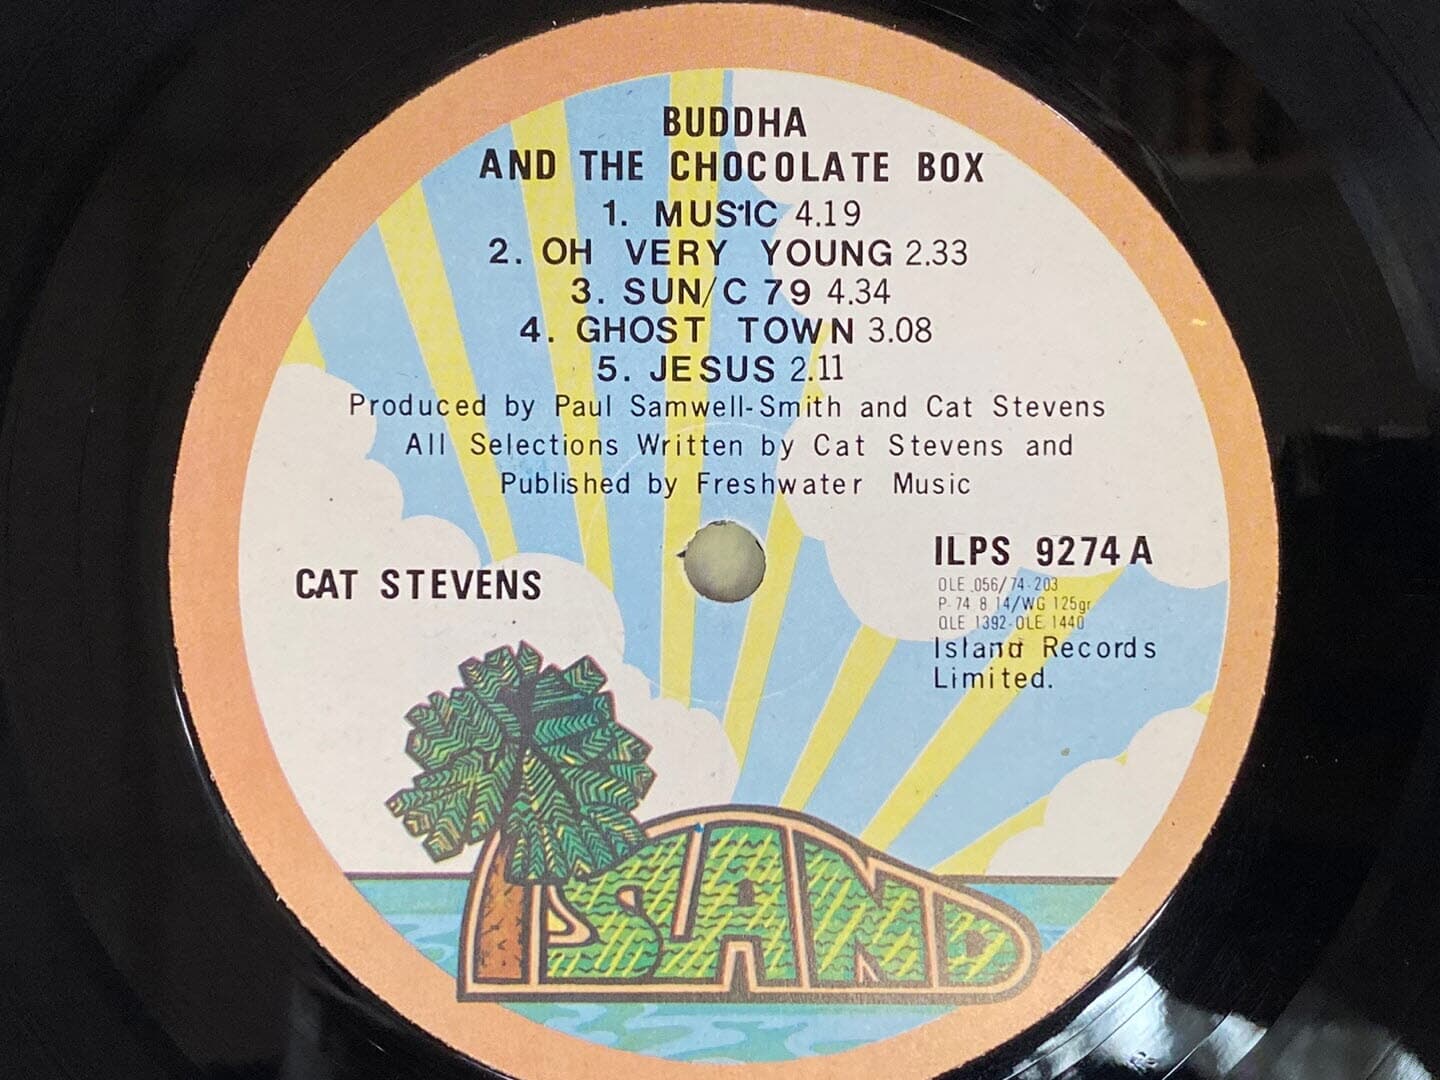 [LP] 캣 스티븐스 - Cat Stevens - Buddha And The Chocolate Box LP [오아시스-라이센스반]